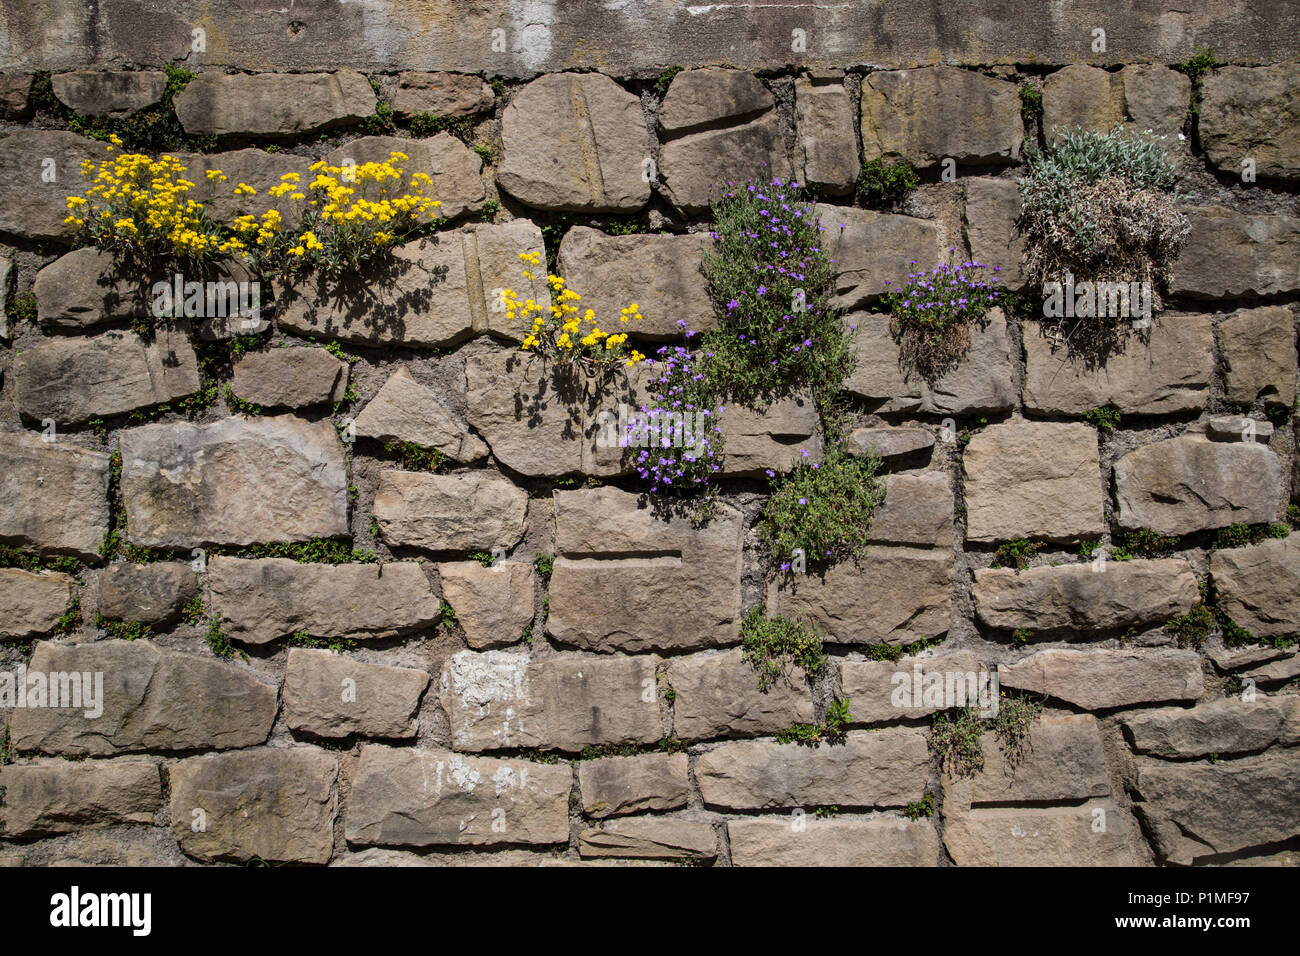 Trouver son chemin avec la nature florissante florissante des plantes qui poussent dans l'ancien mur en pierre sèche Banque D'Images